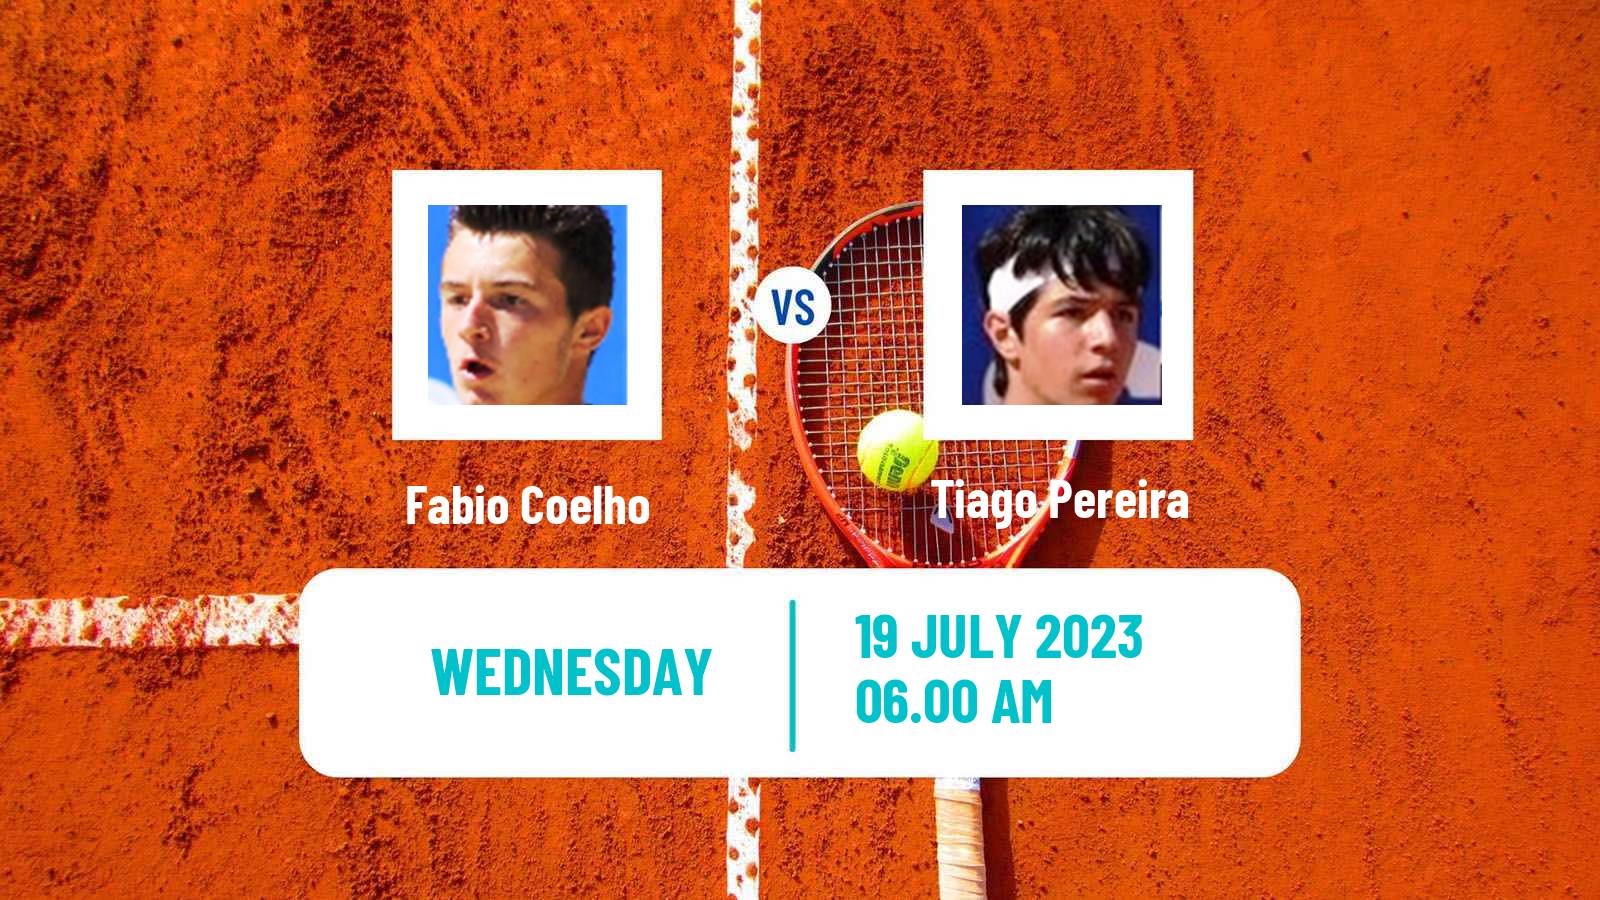 Tennis ITF M25 Castelo Branco Men Fabio Coelho - Tiago Pereira